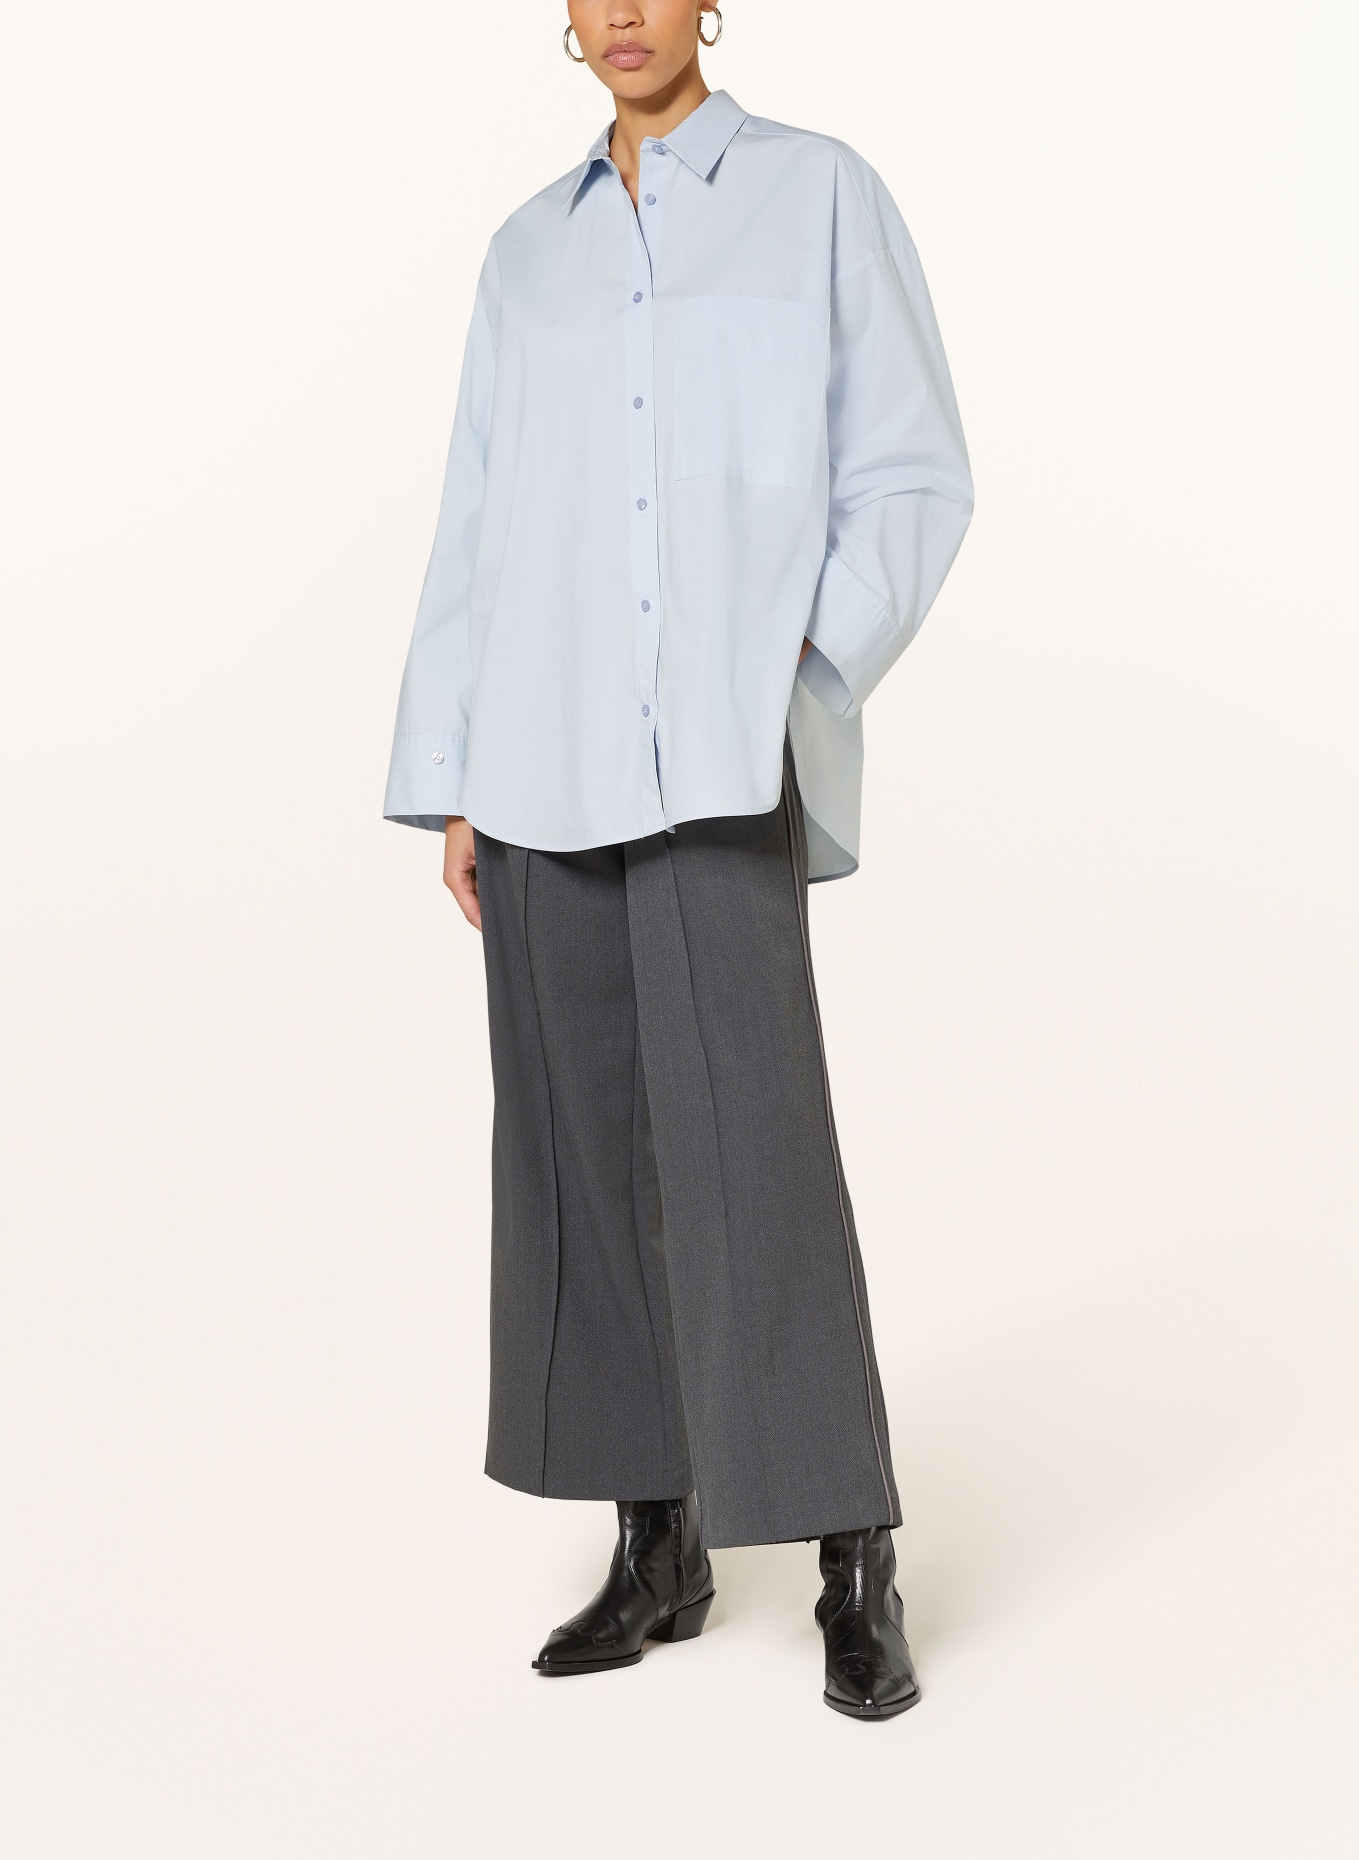 BY MALENE BIRGER Shirt blouse DERRIS, Color: LIGHT BLUE (Image 2)